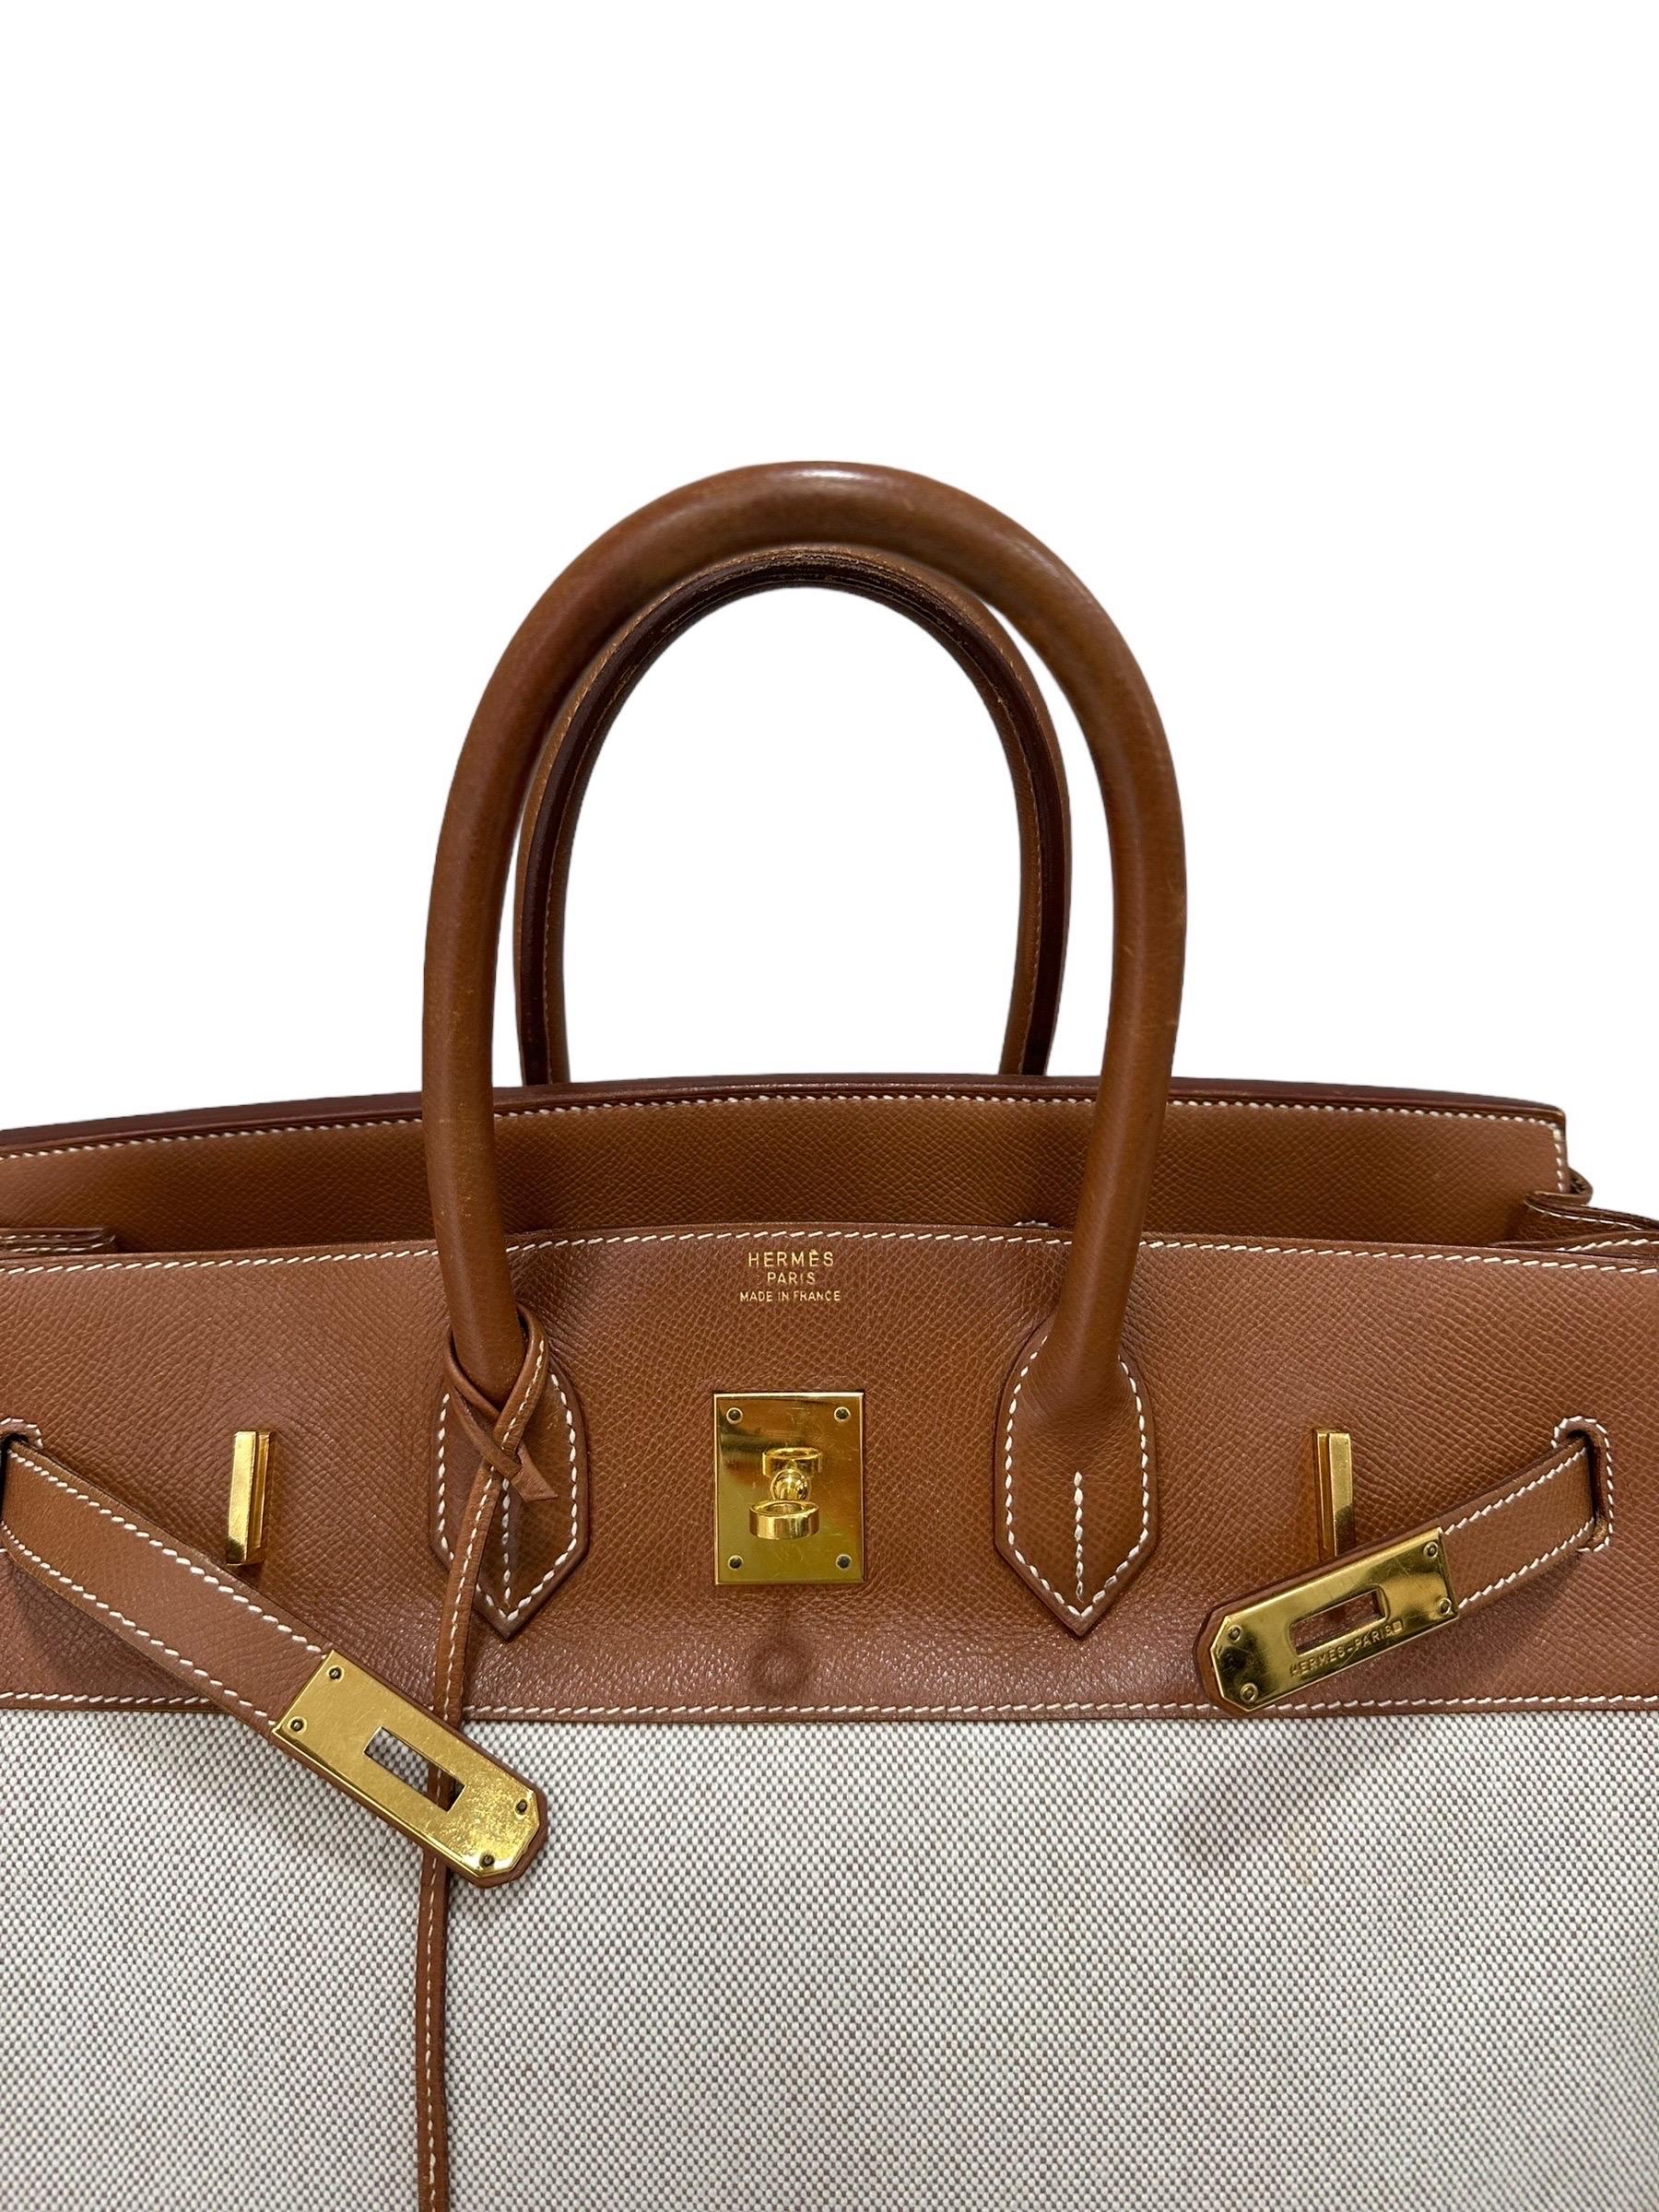 1994 Hermès Birkin 35 Epsom Gold Canvas Top Handle Bag For Sale 13